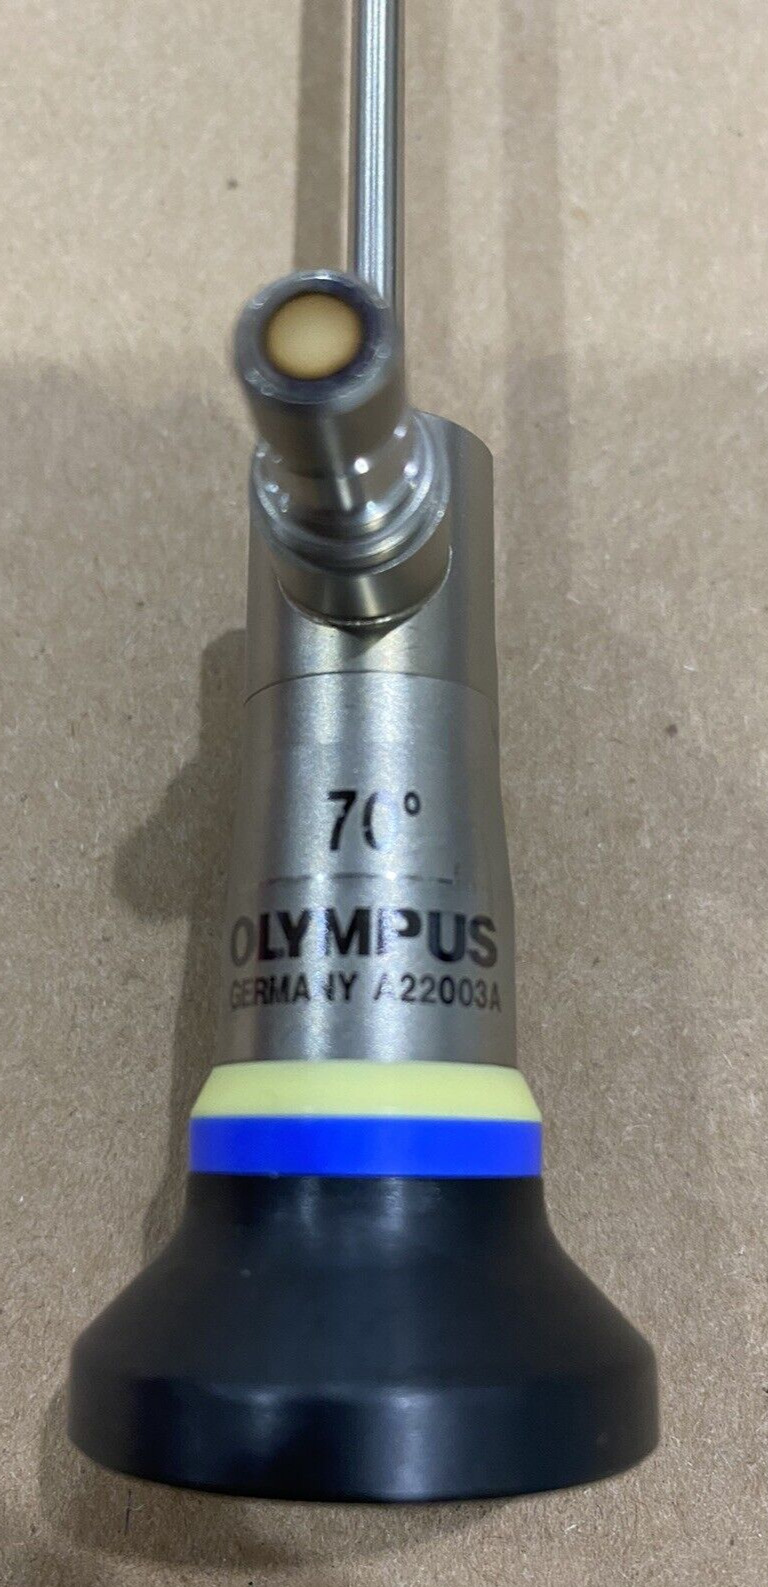 Olympus Cytoscope A22003A